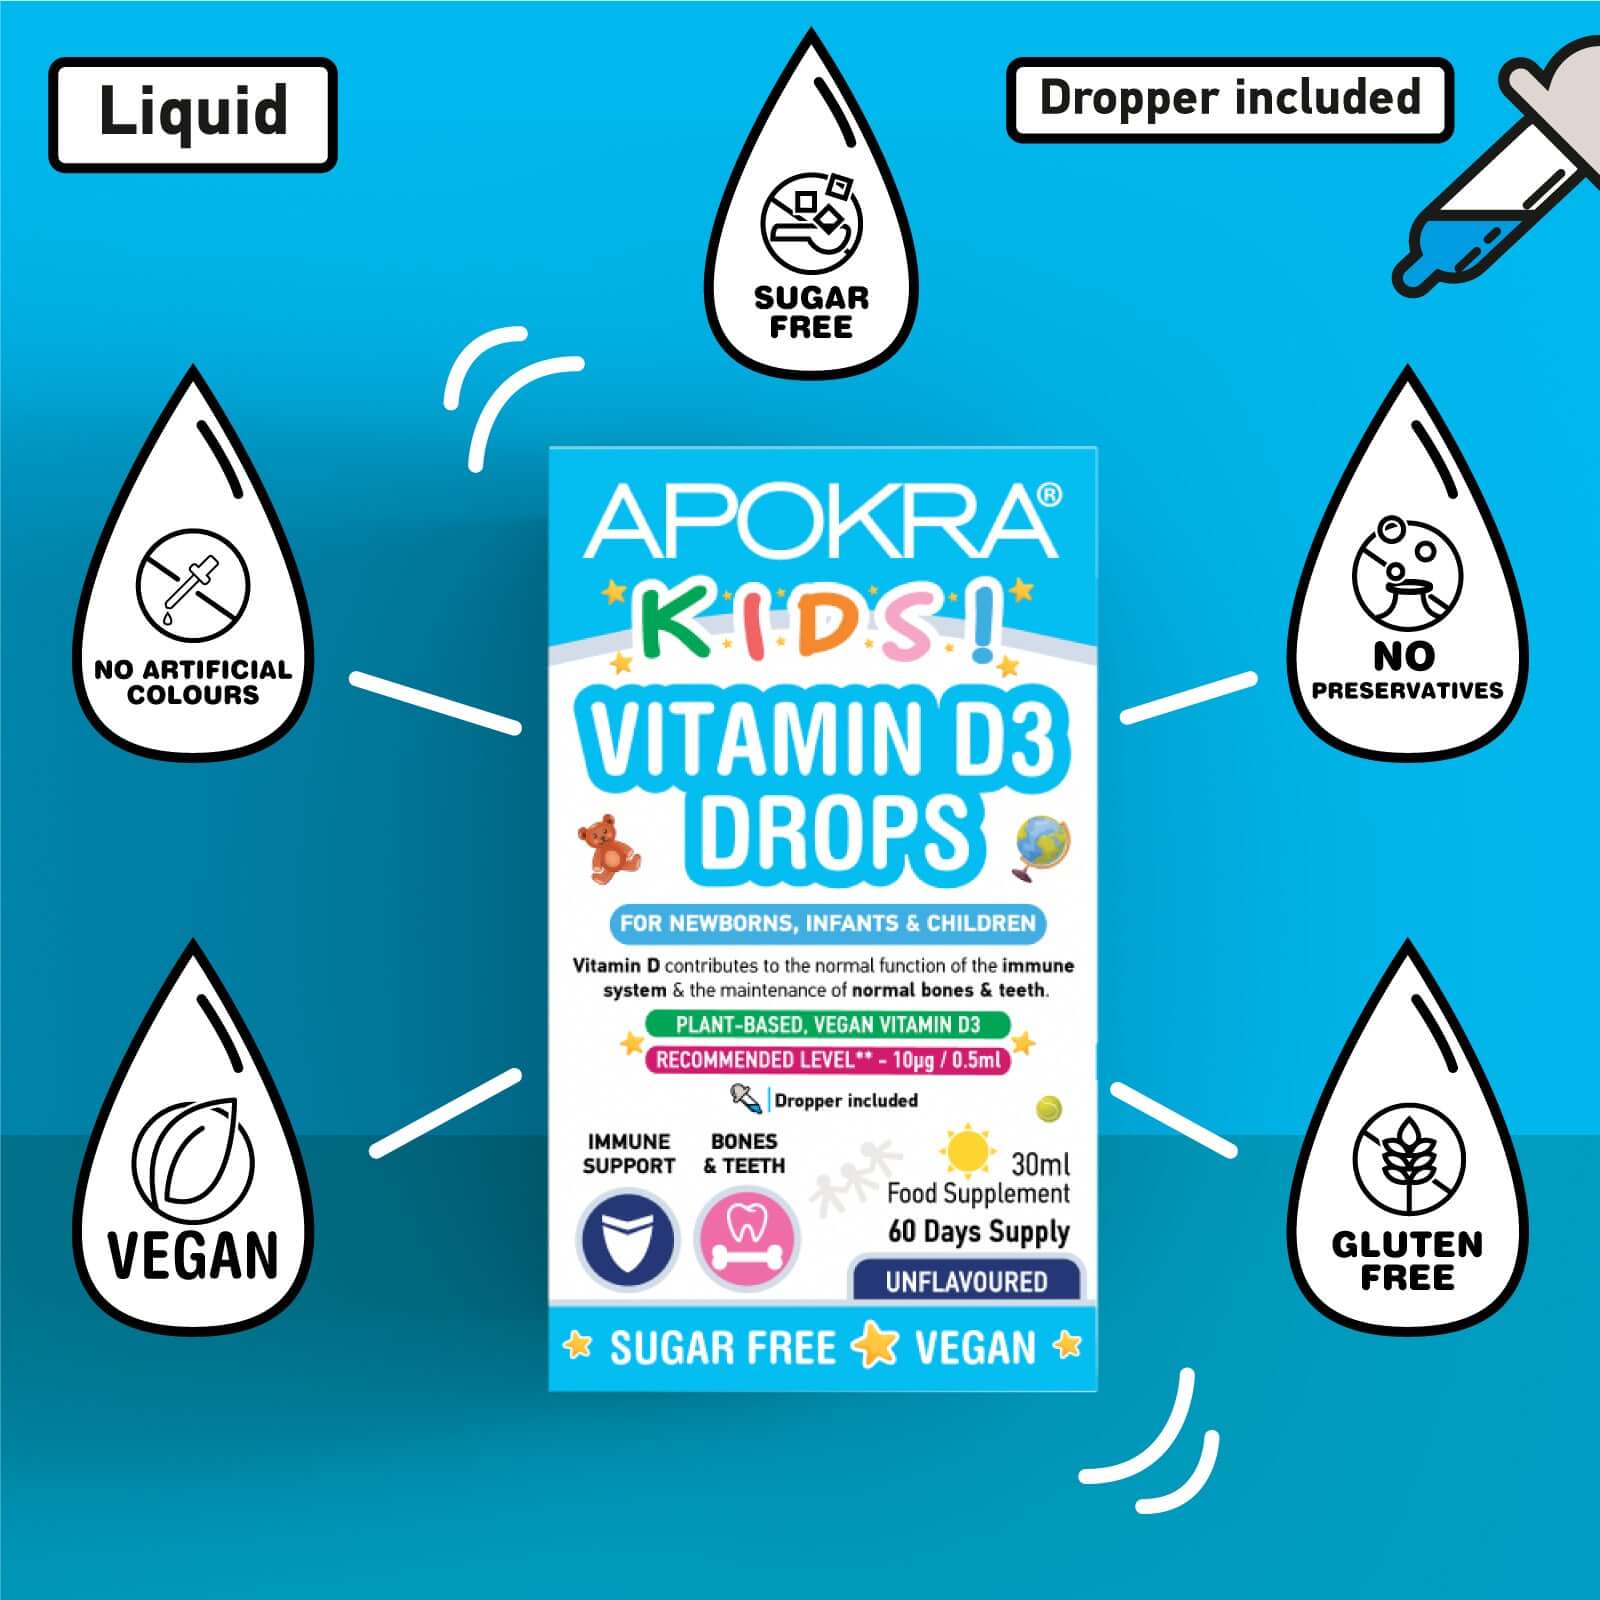 Benefits of APOKRA Vitamin D3 Drops